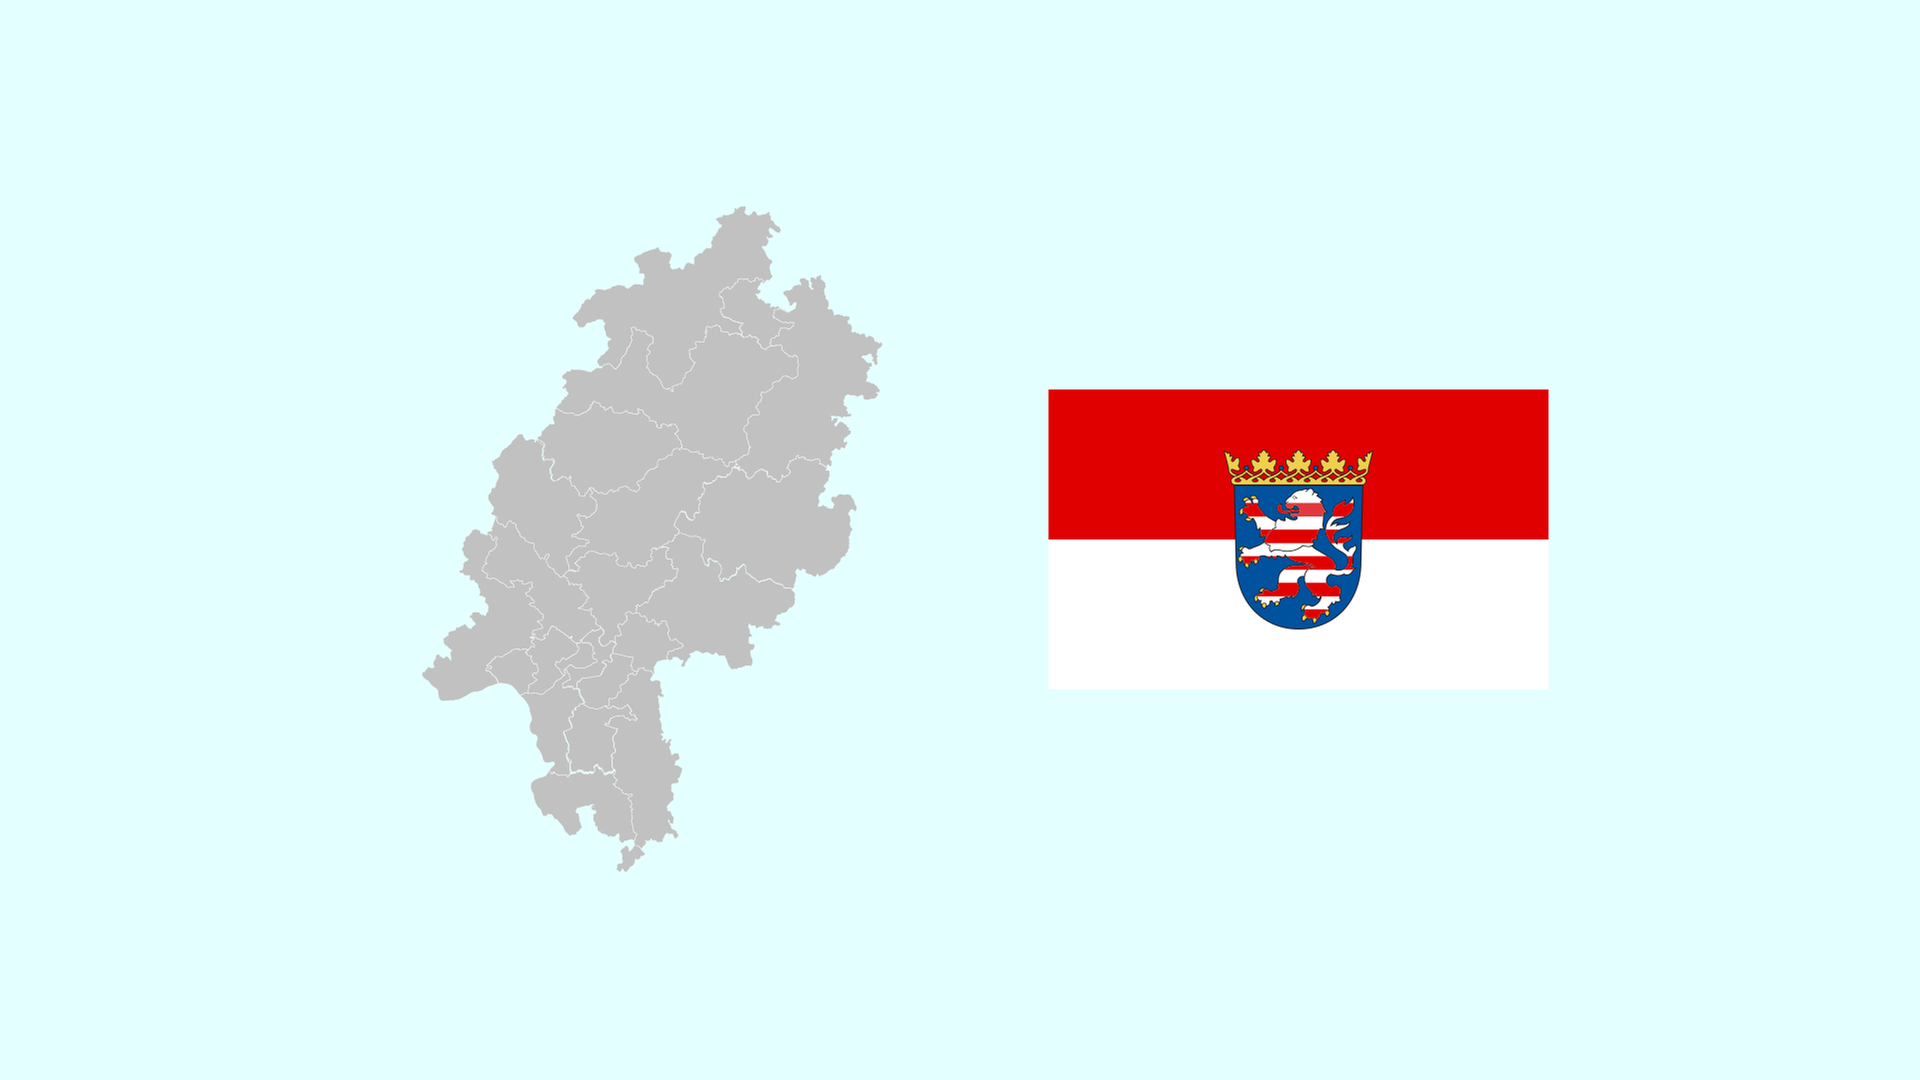 Wahlkreise und Flagge von Hessen